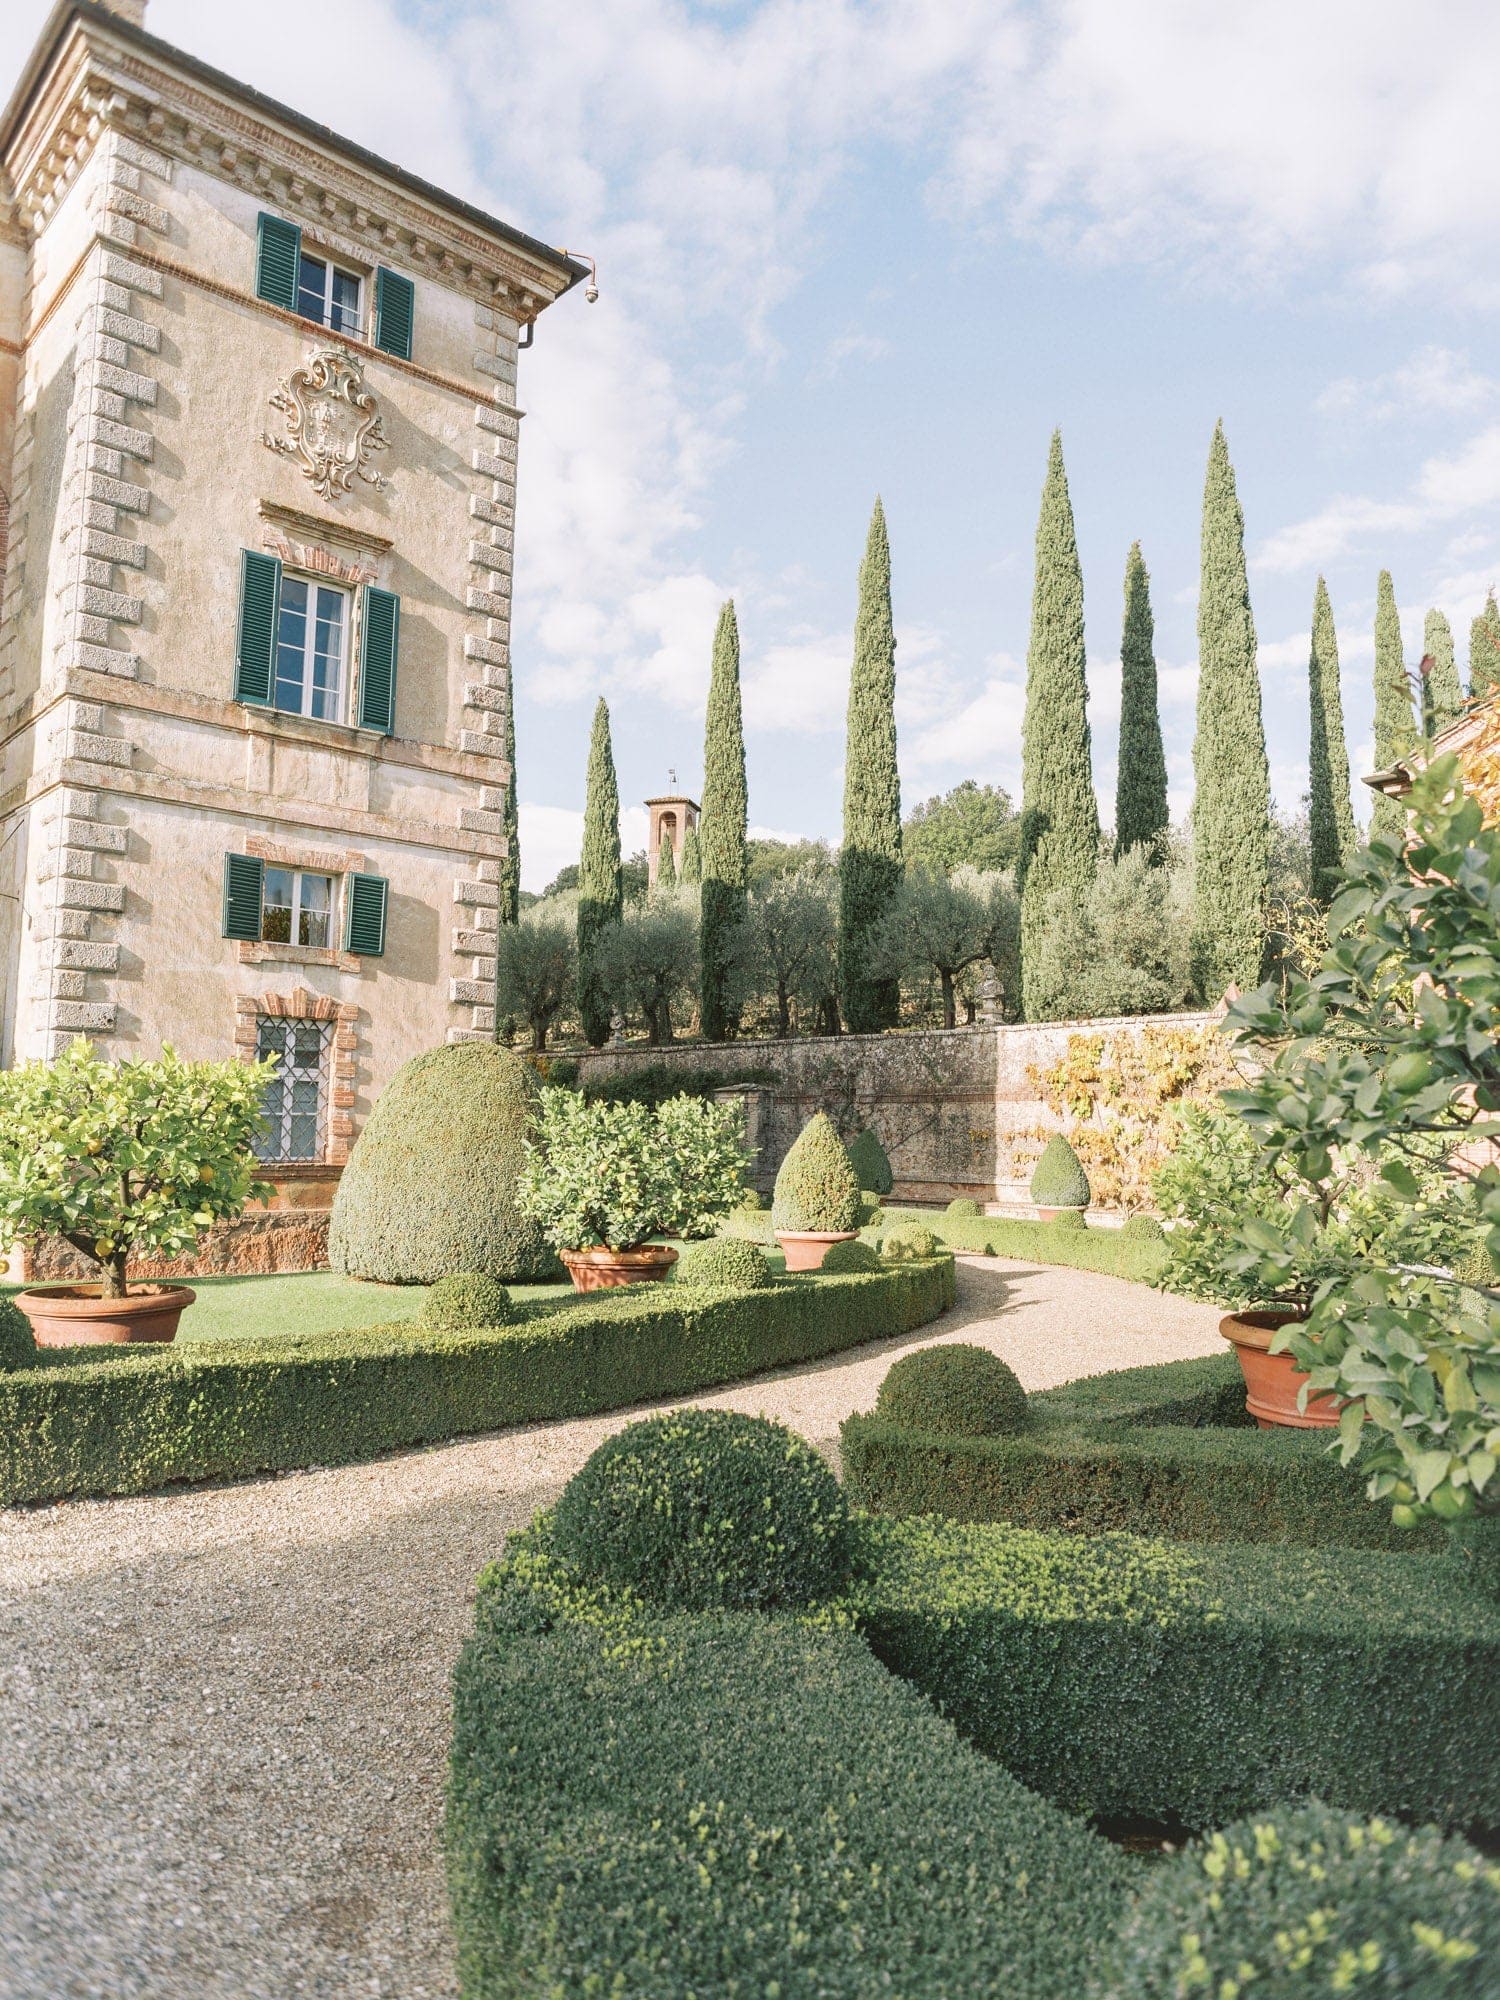 Villa Cetinale: Tuscany's perfect Wedding Venue